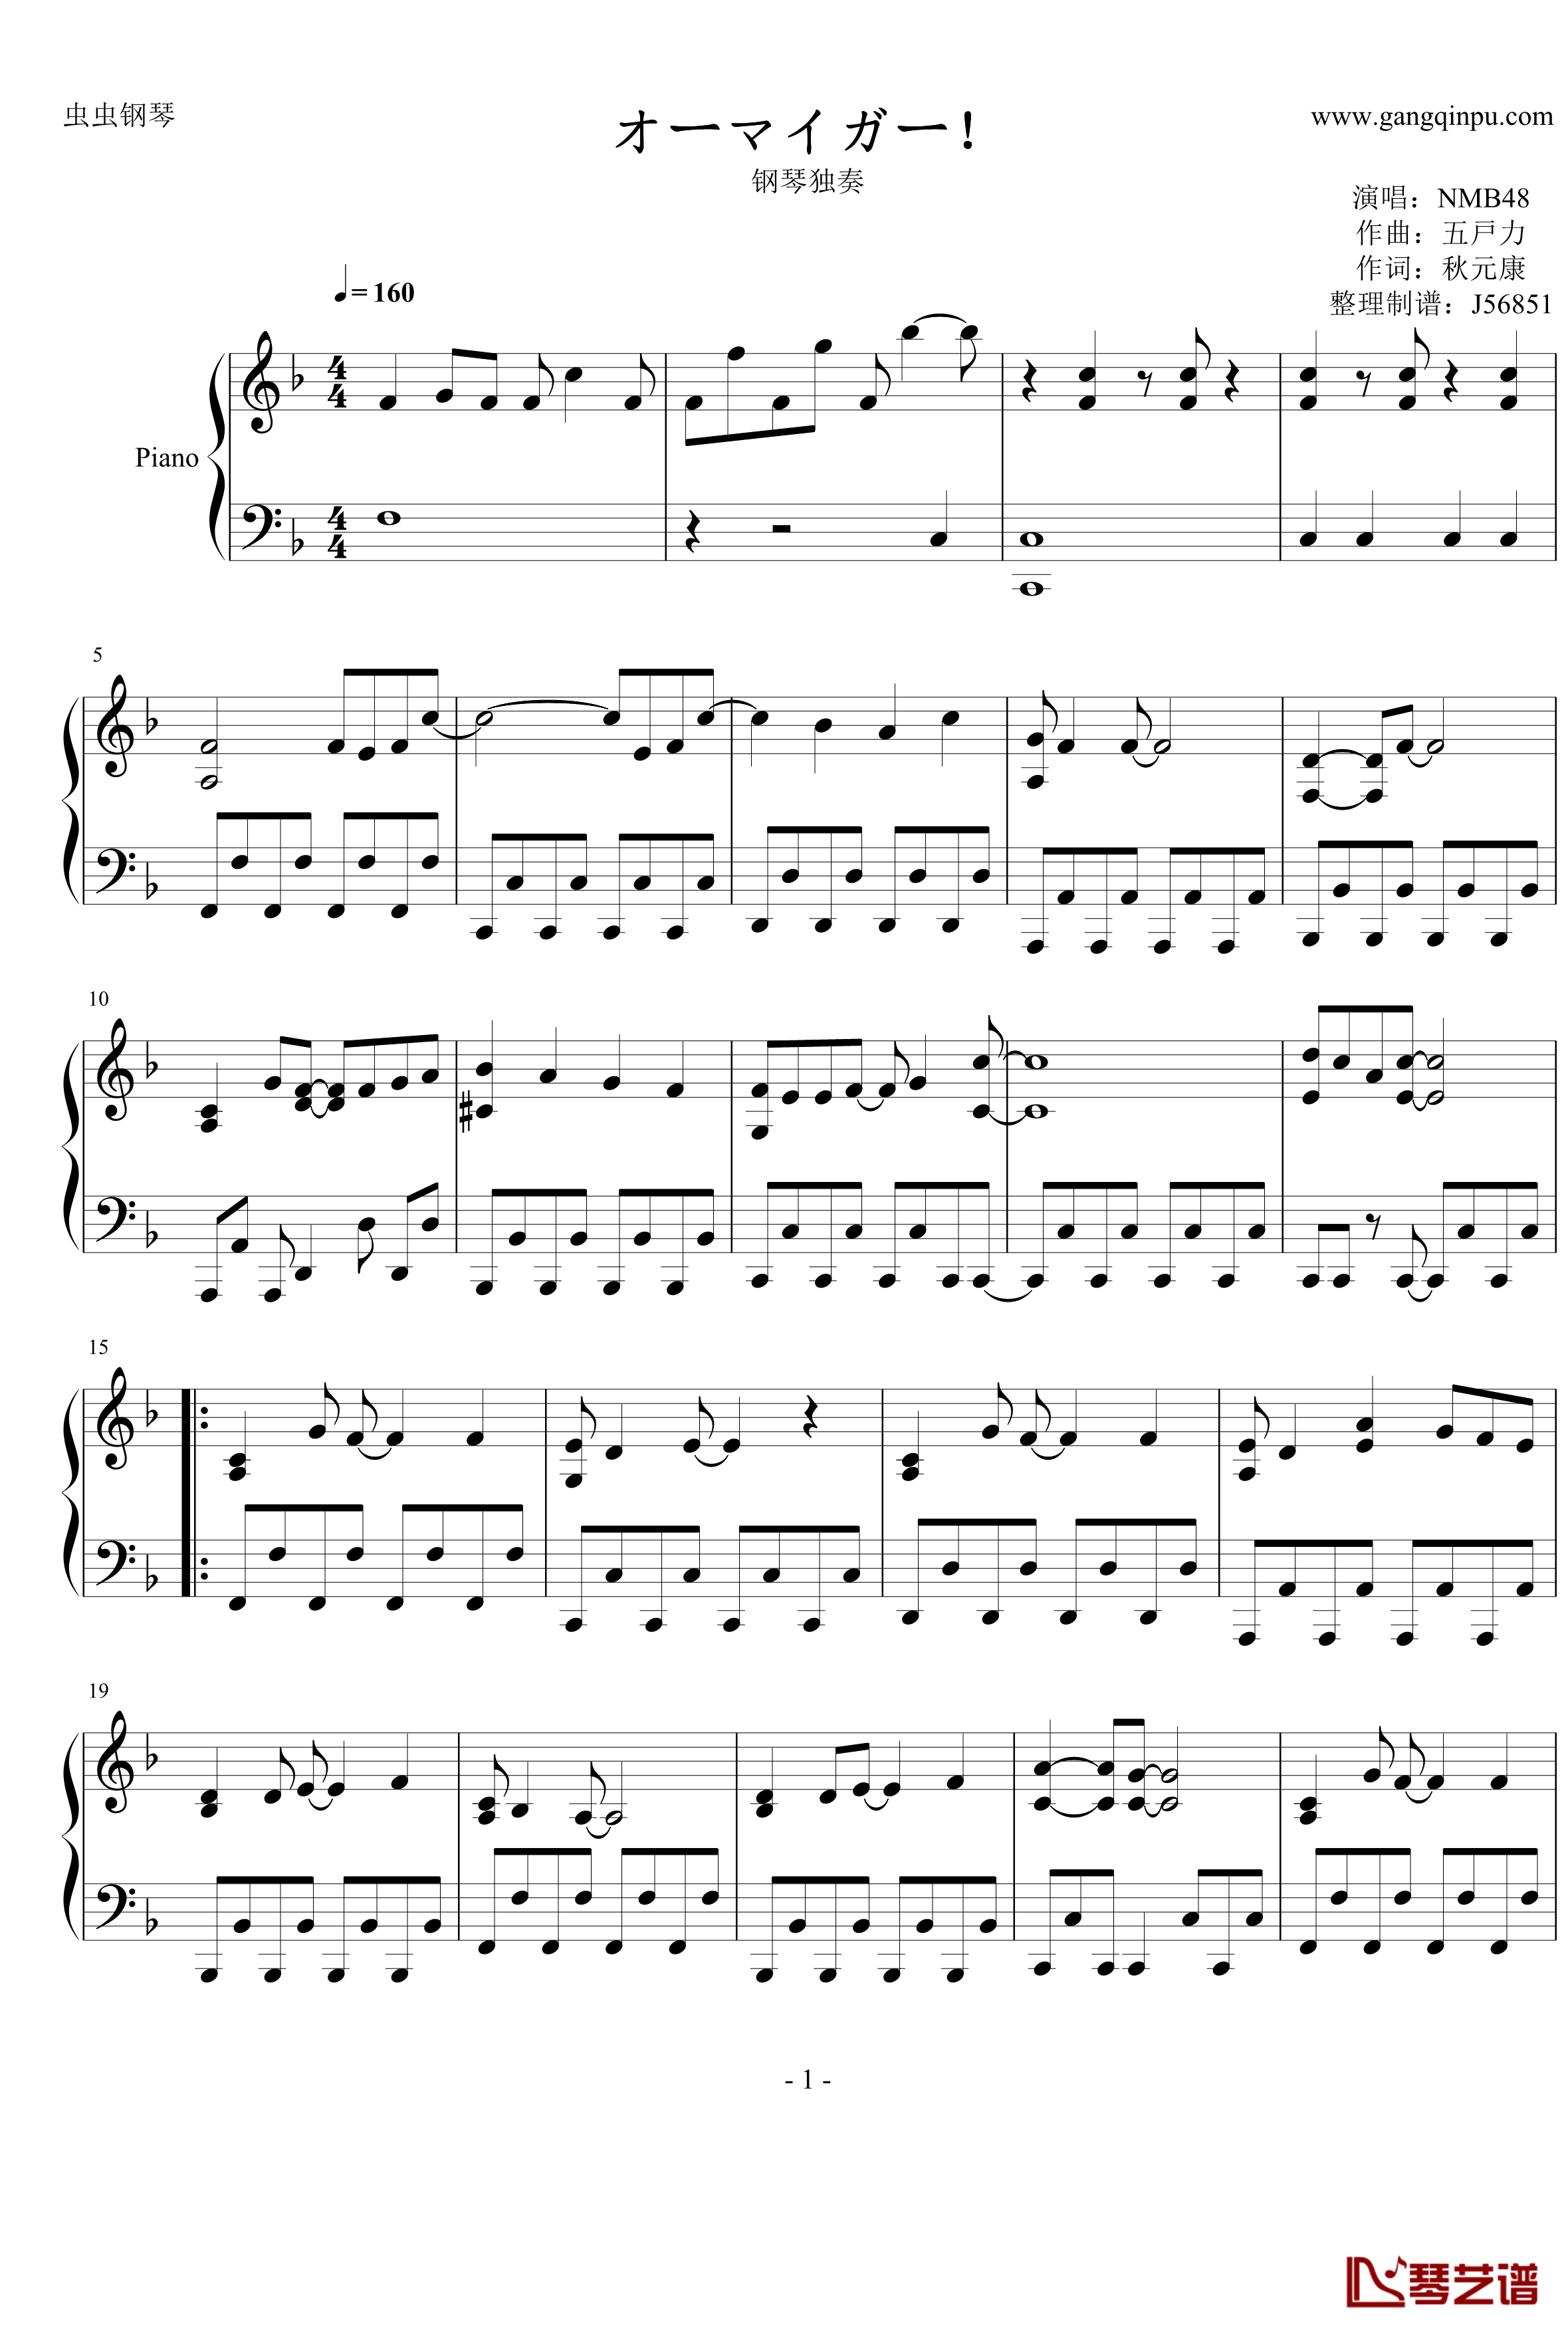 オーマイガー钢琴谱-修订完善版-NMB481